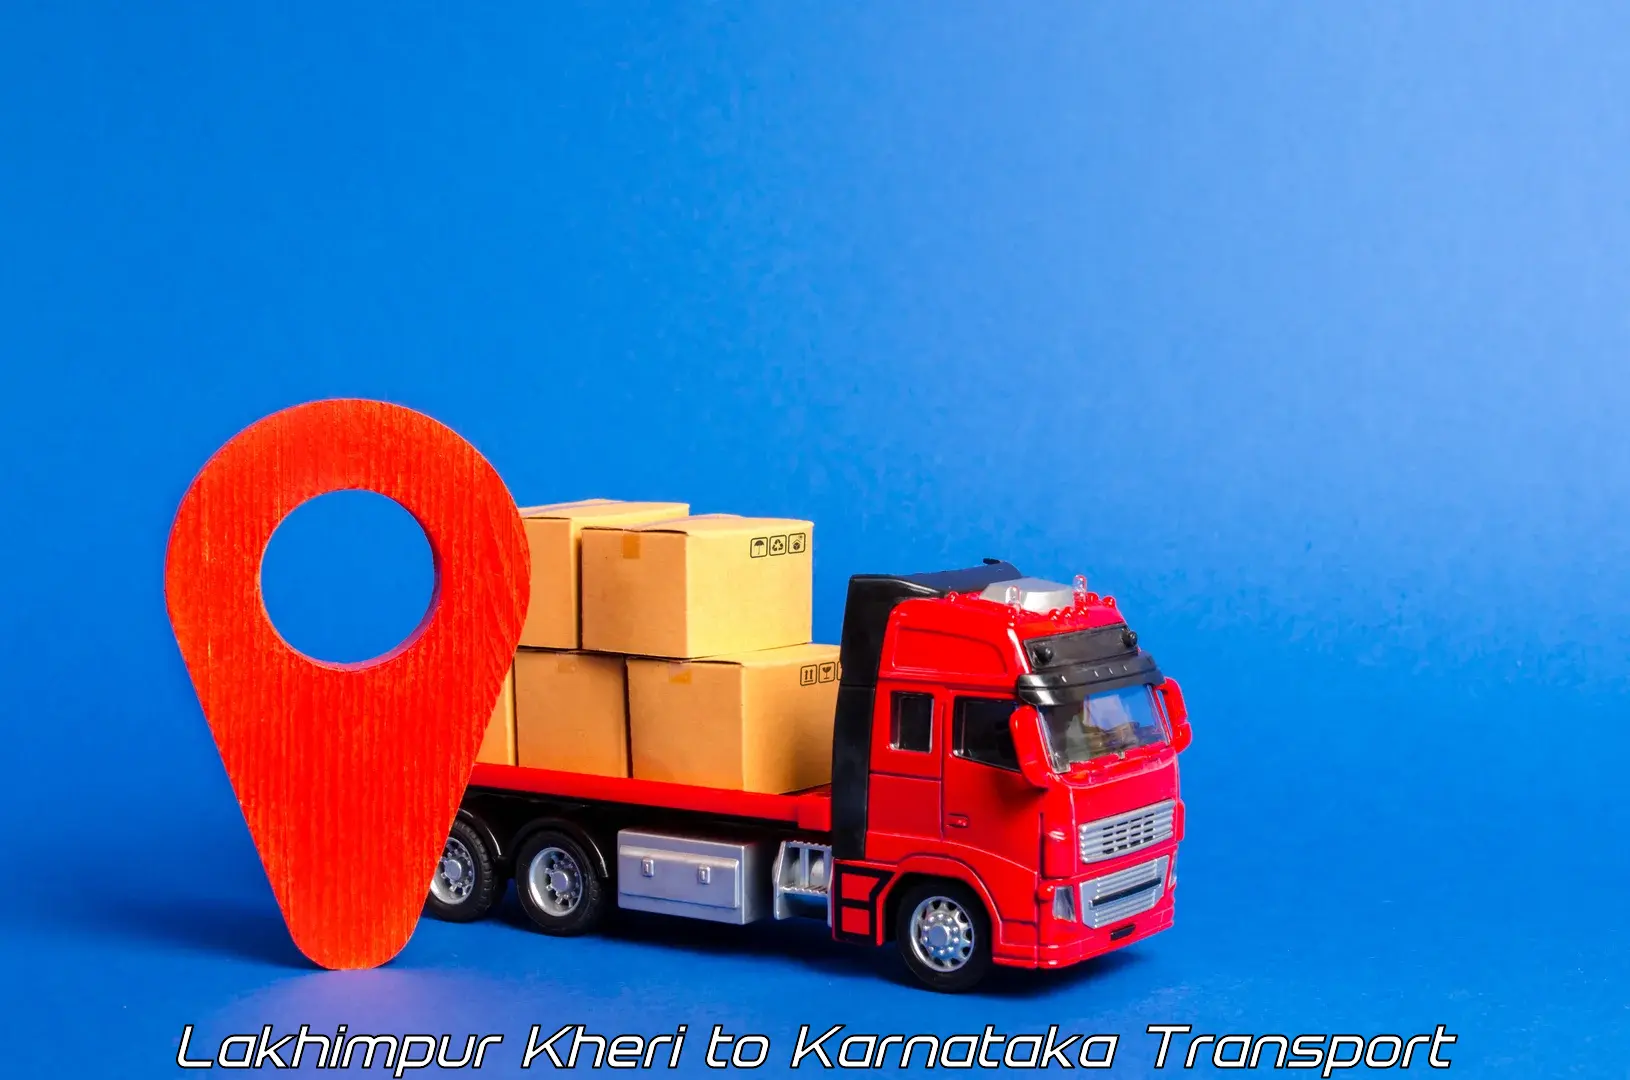 Intercity goods transport in Lakhimpur Kheri to Yadgiri